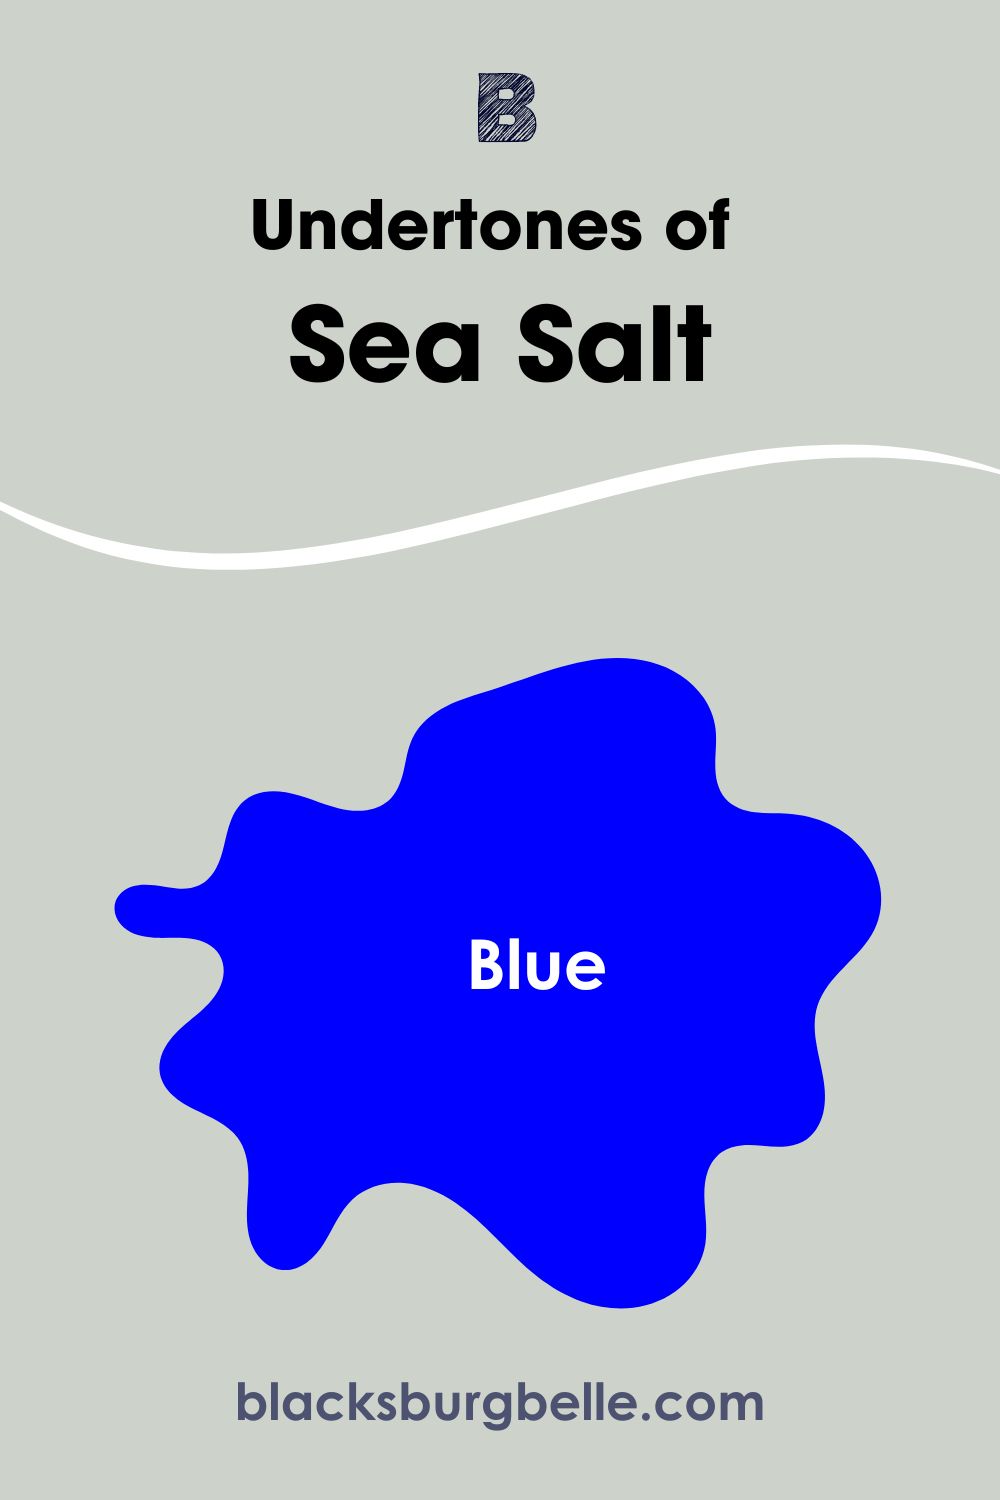 Undertones of Sea Salt